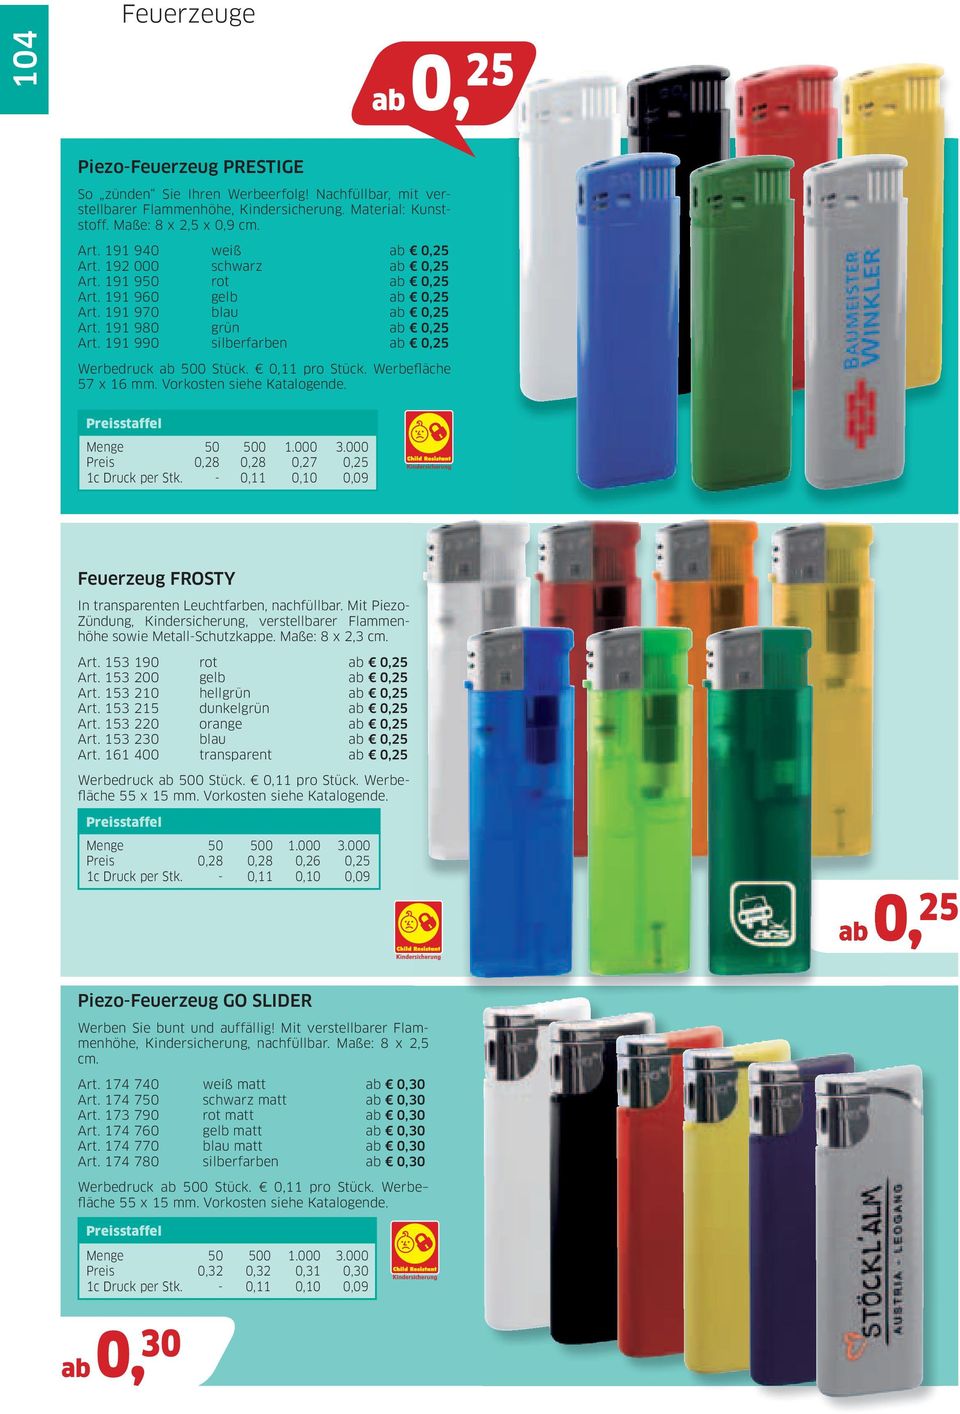 Vorkosten siehe Katalogende. Preis 0,28 0,28 0,27 0,25 Feuerzeug FROSTY In transparenten Leuchtfarben, nachfüllbar.